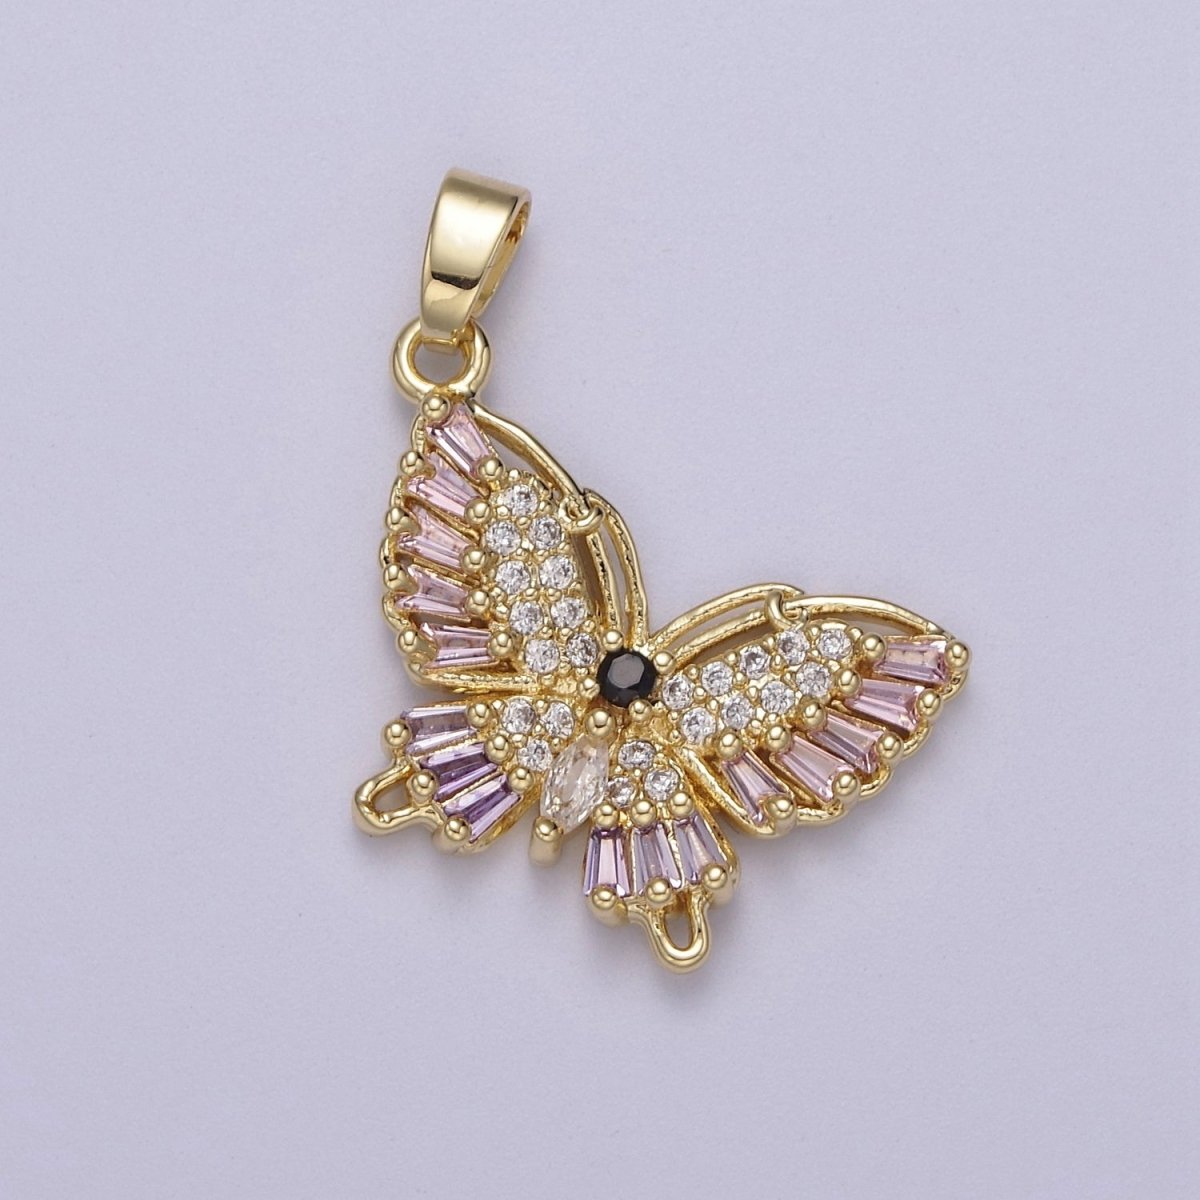 Colorful CZ Butterfly Pendant 24K Gold Filled Butterfly Pendant, Necklace Bracelet Supply J-513 J-517 - DLUXCA